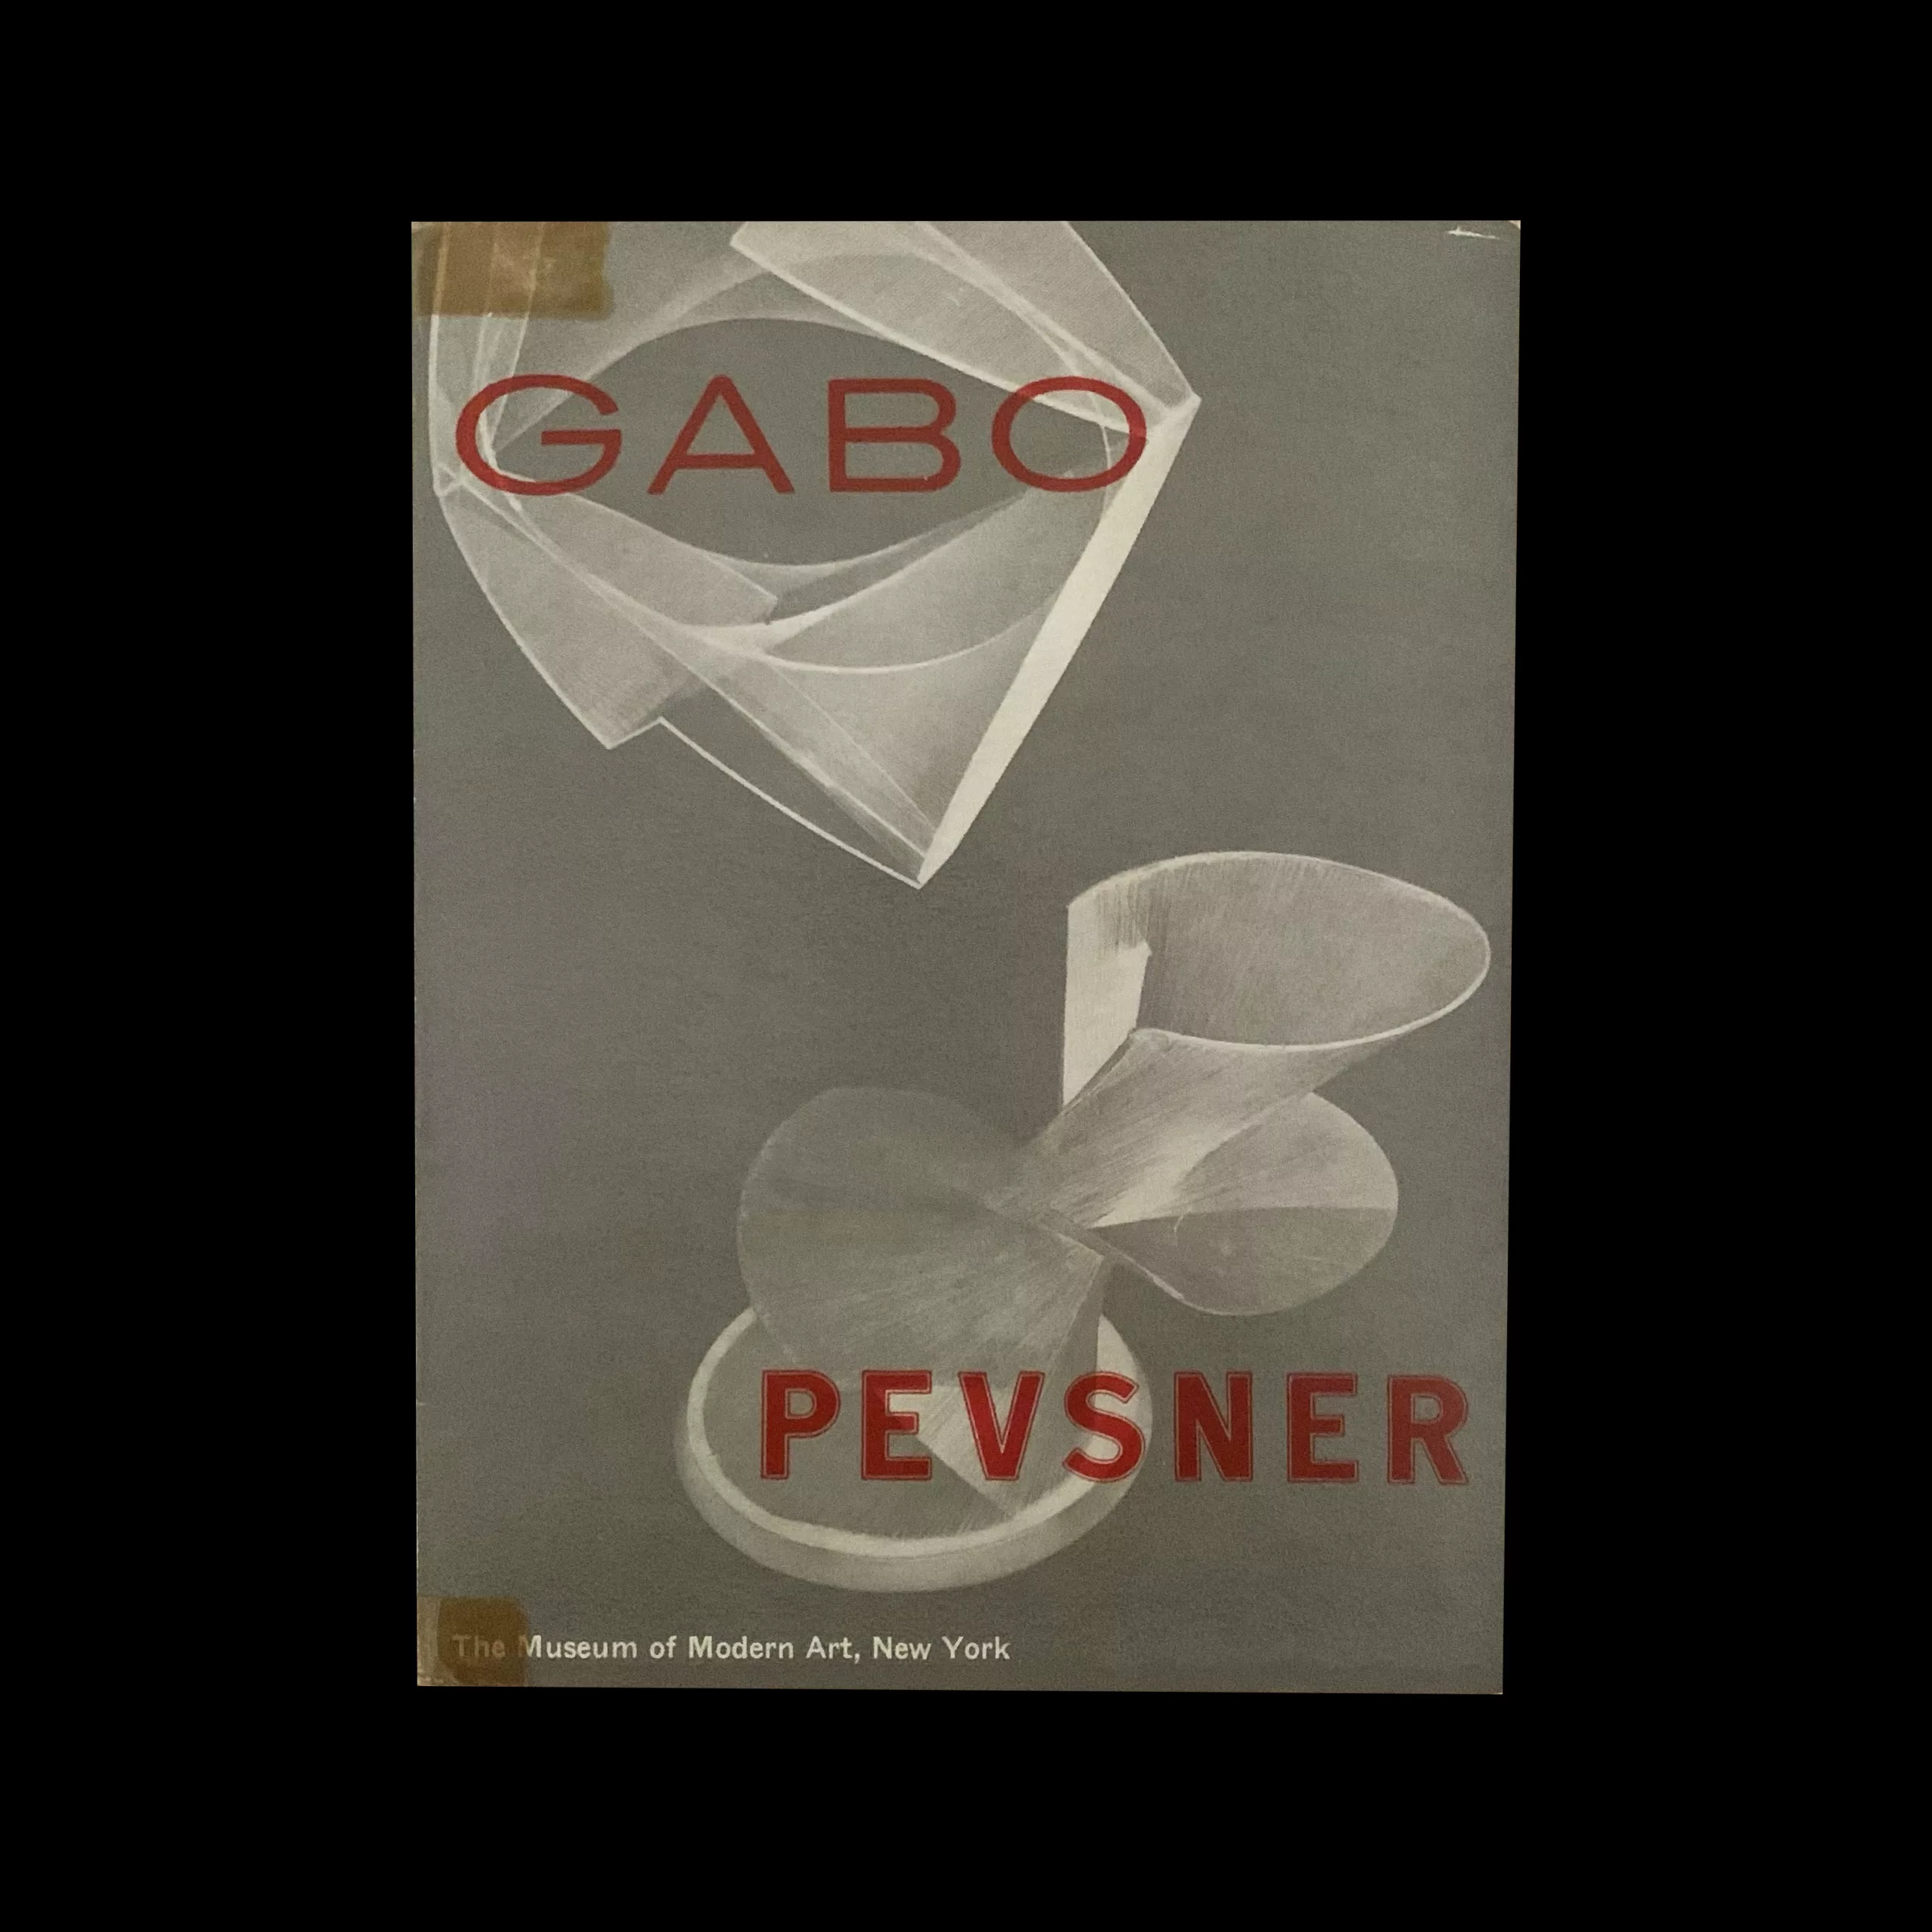 Gabo Pevsner, Museum of Modern Art, New York, 1948.